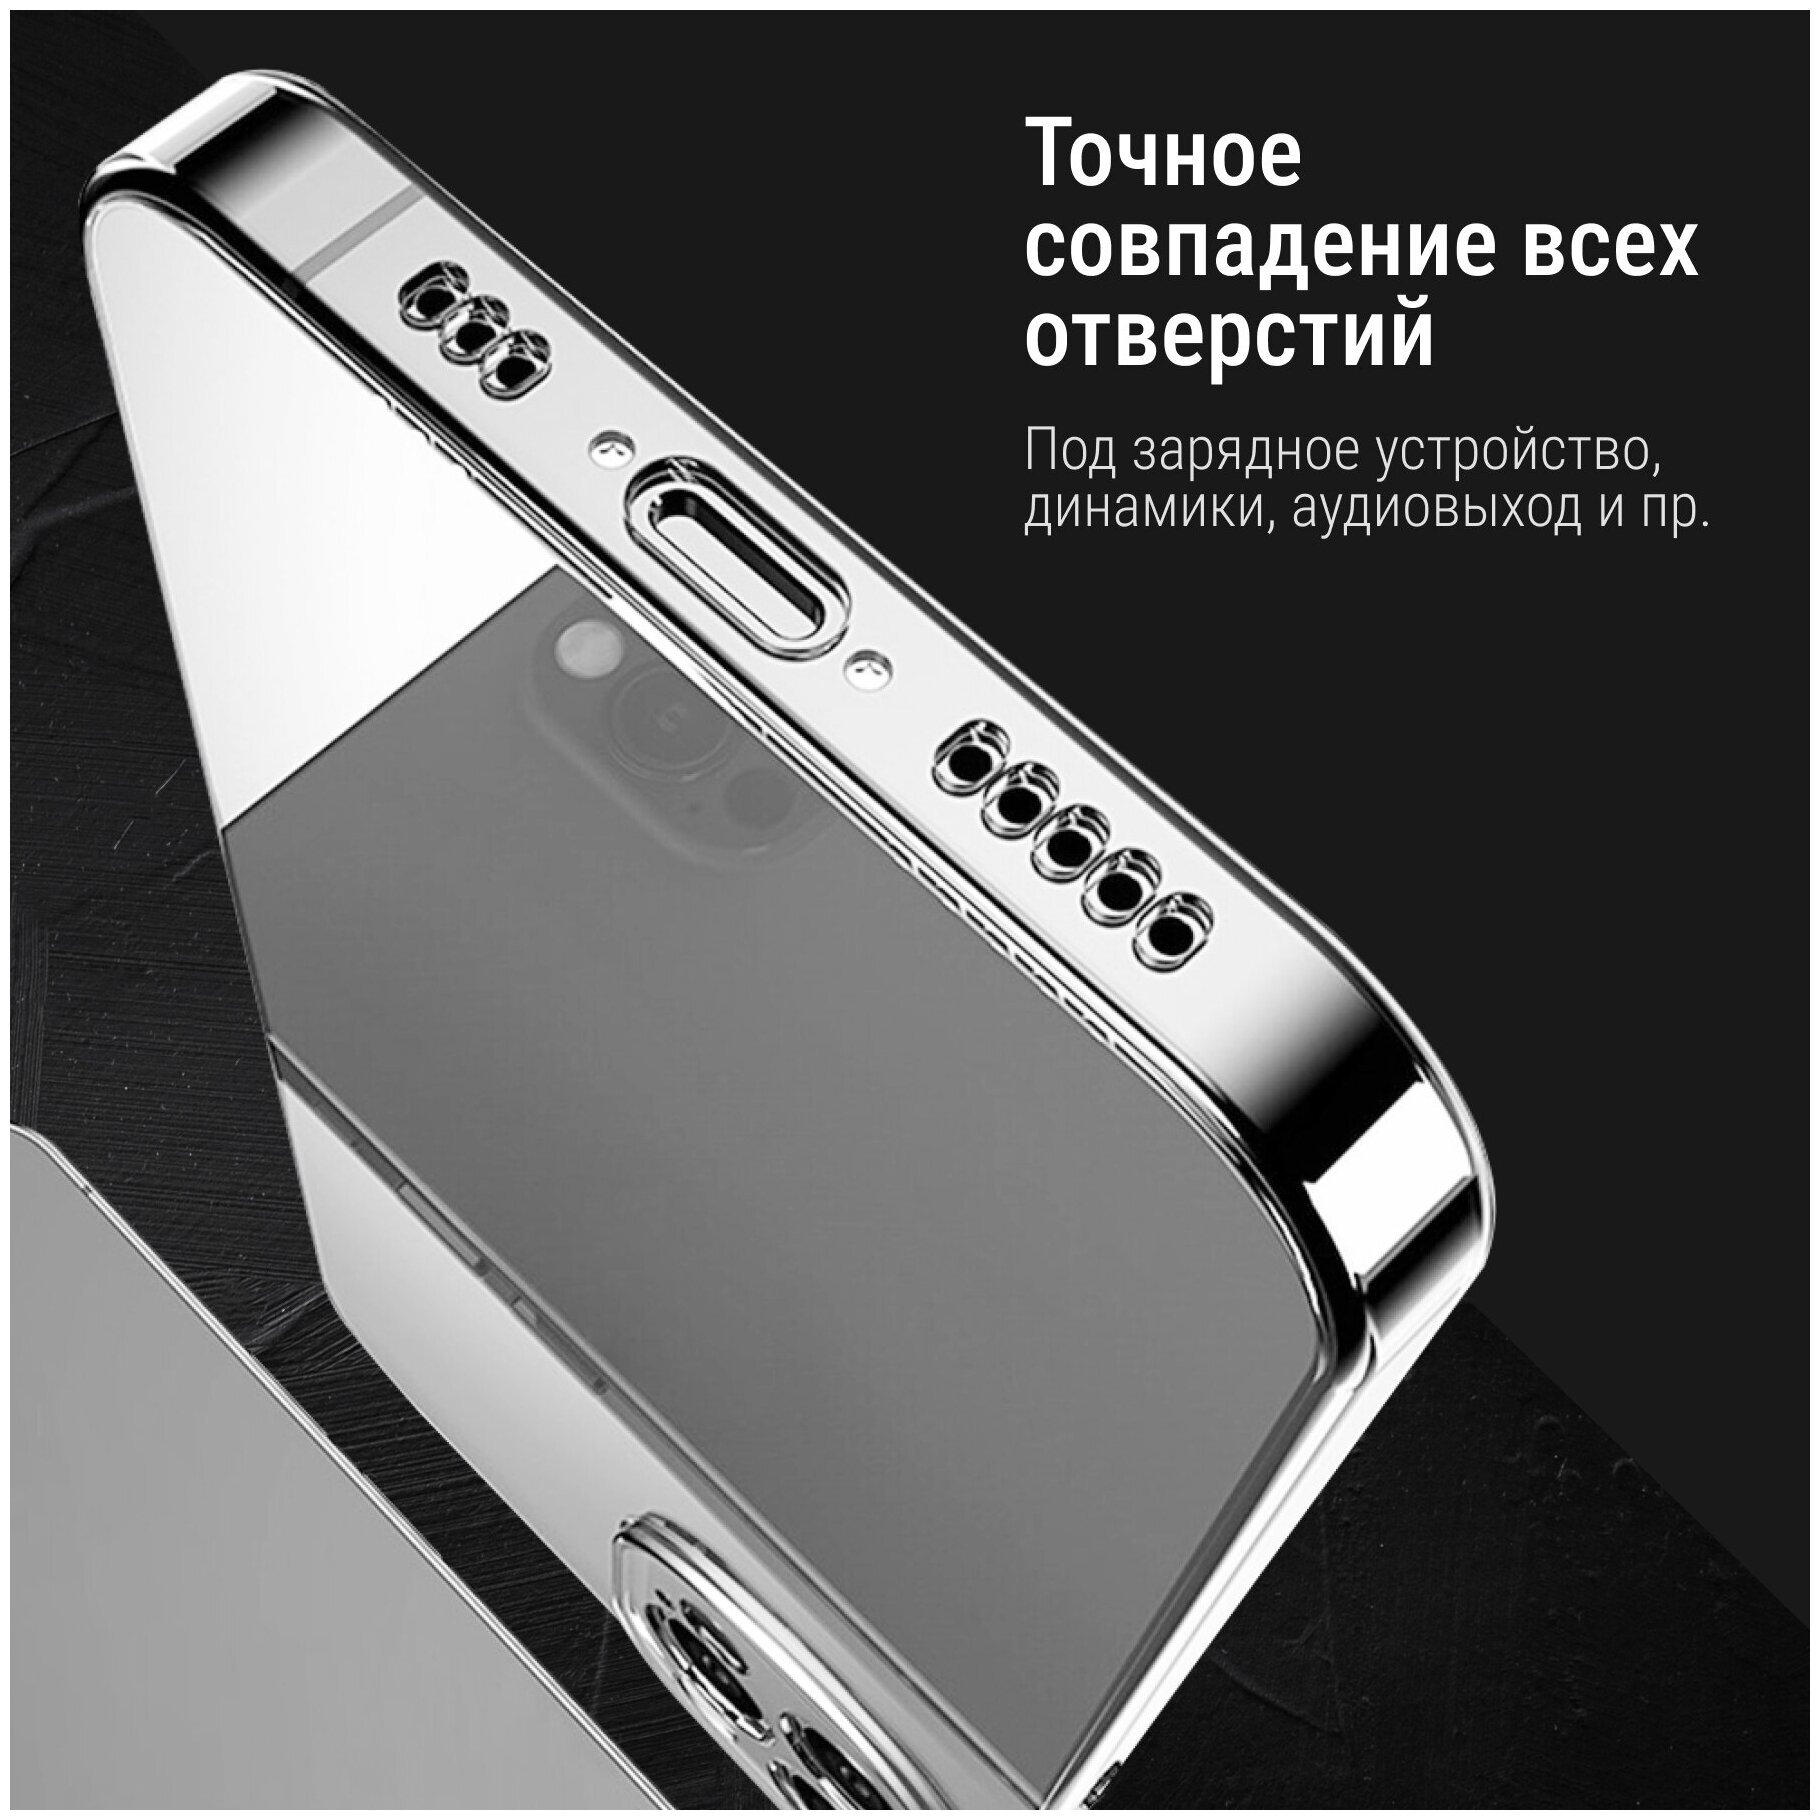 Ультратонкий силиконовый чехол для телефона Samsung Galaxy A51 / Прозрачный защитный чехол для Самсунг Галакси А51 / Premium силикон